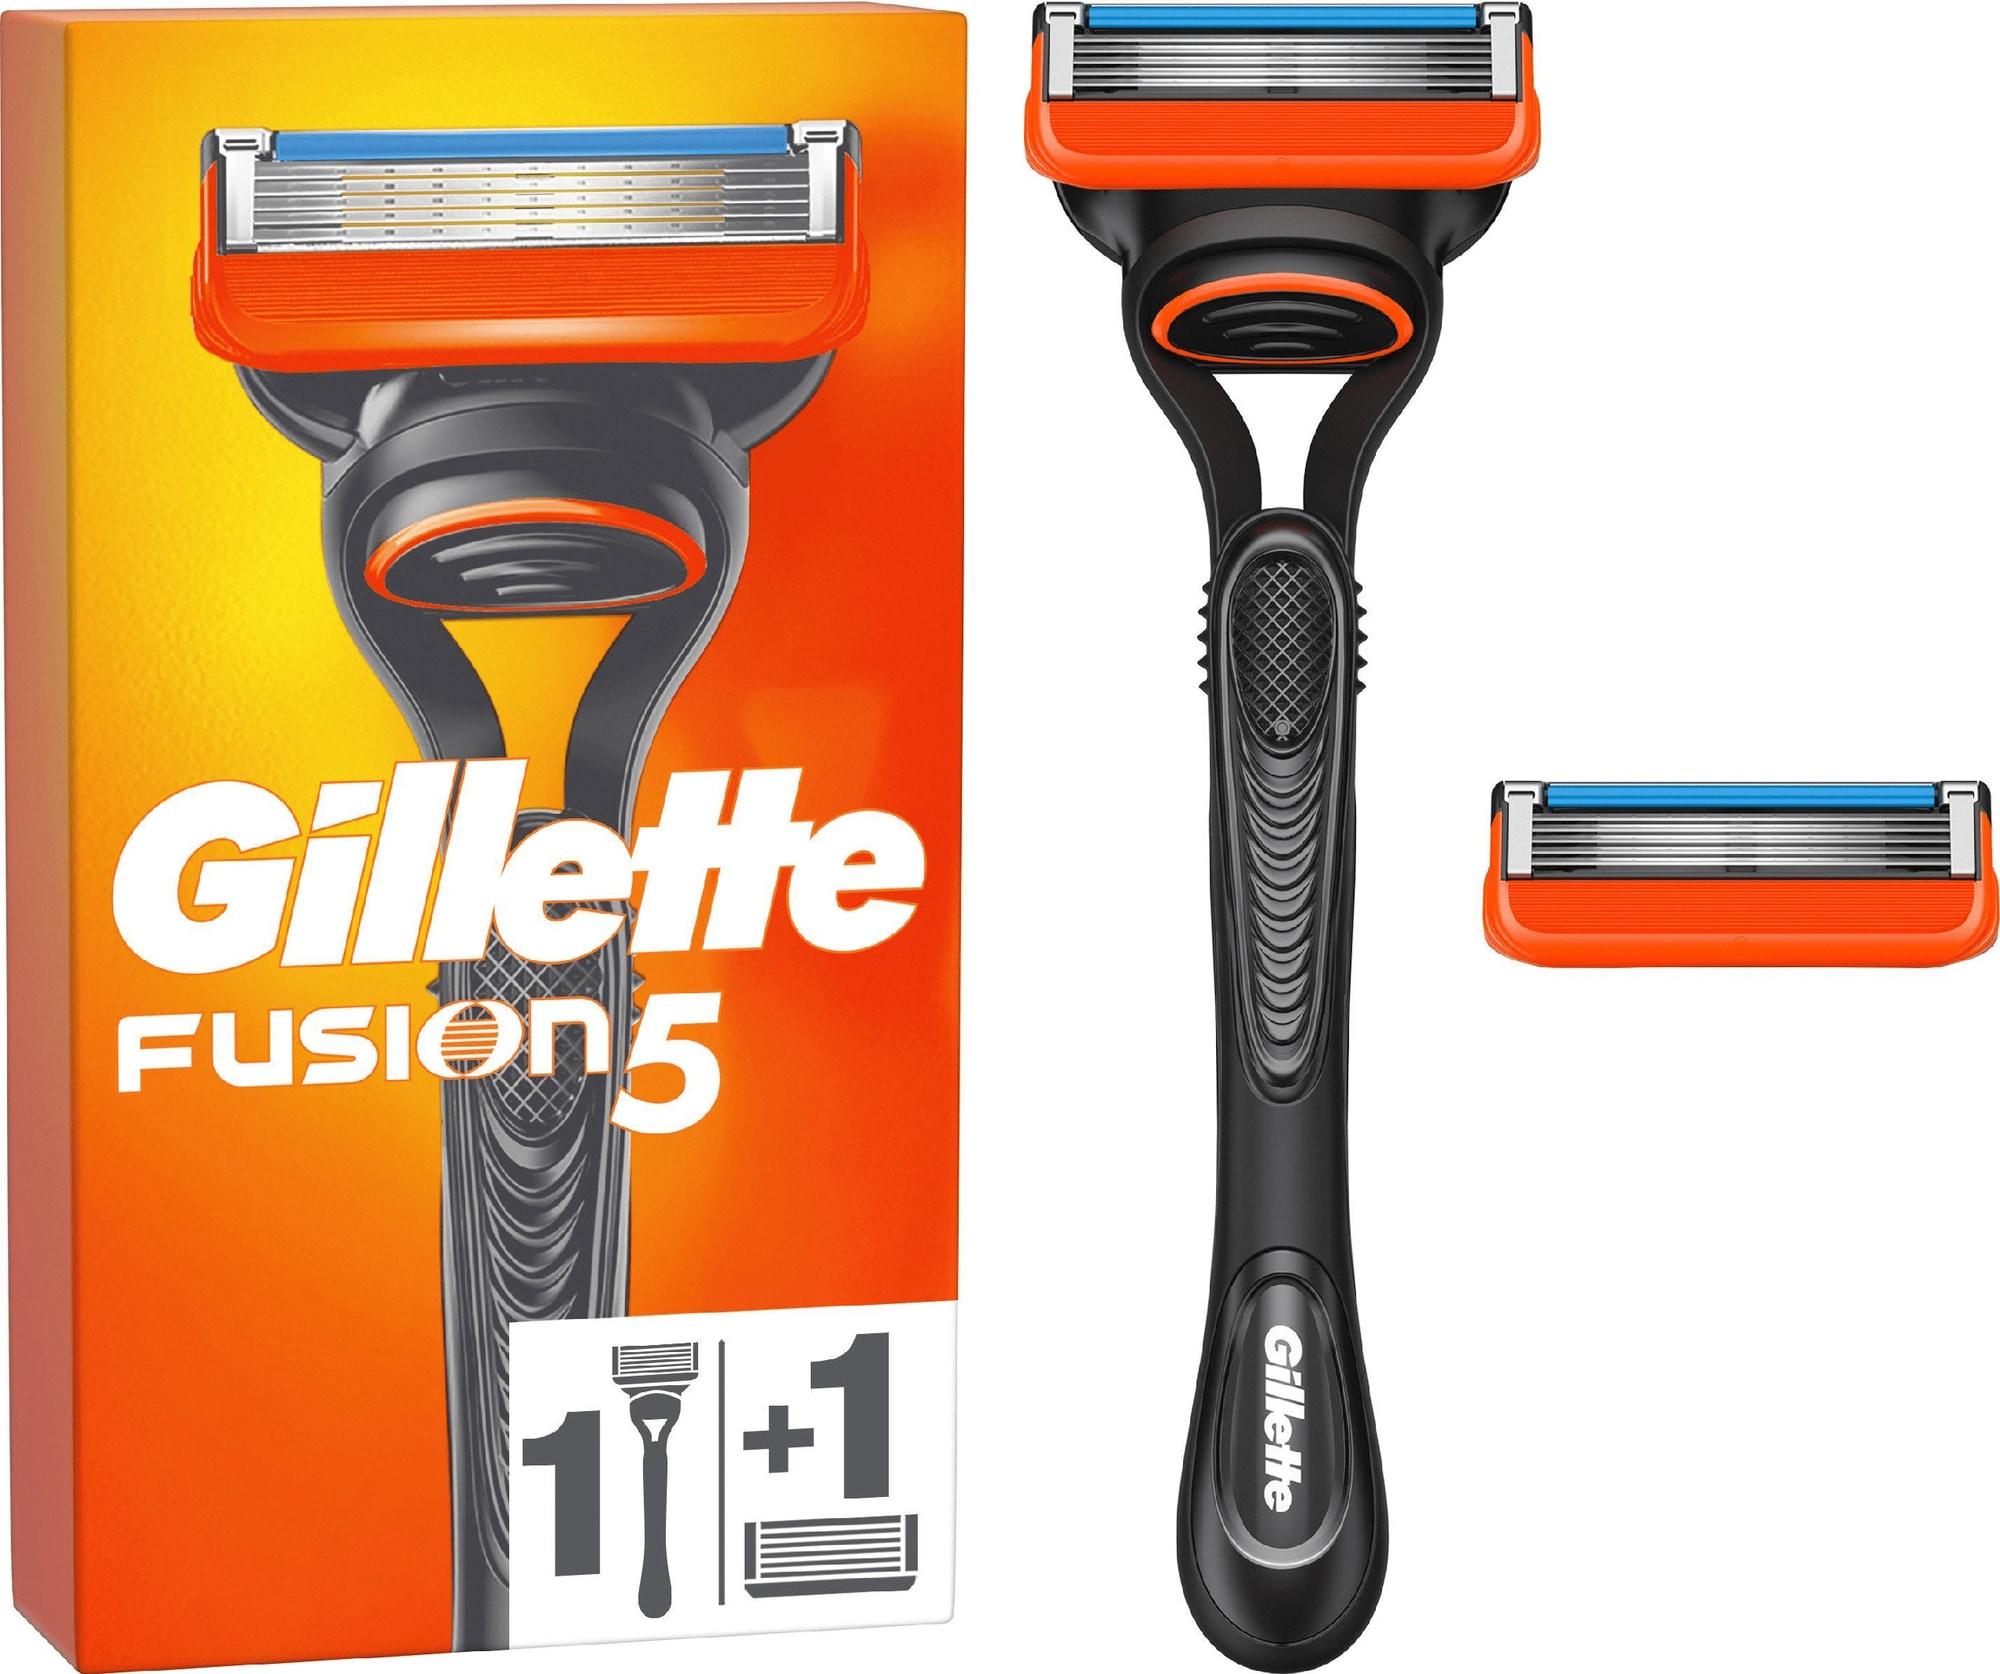 Gillette Fusion5 rakapparat 596683 - Elgiganten